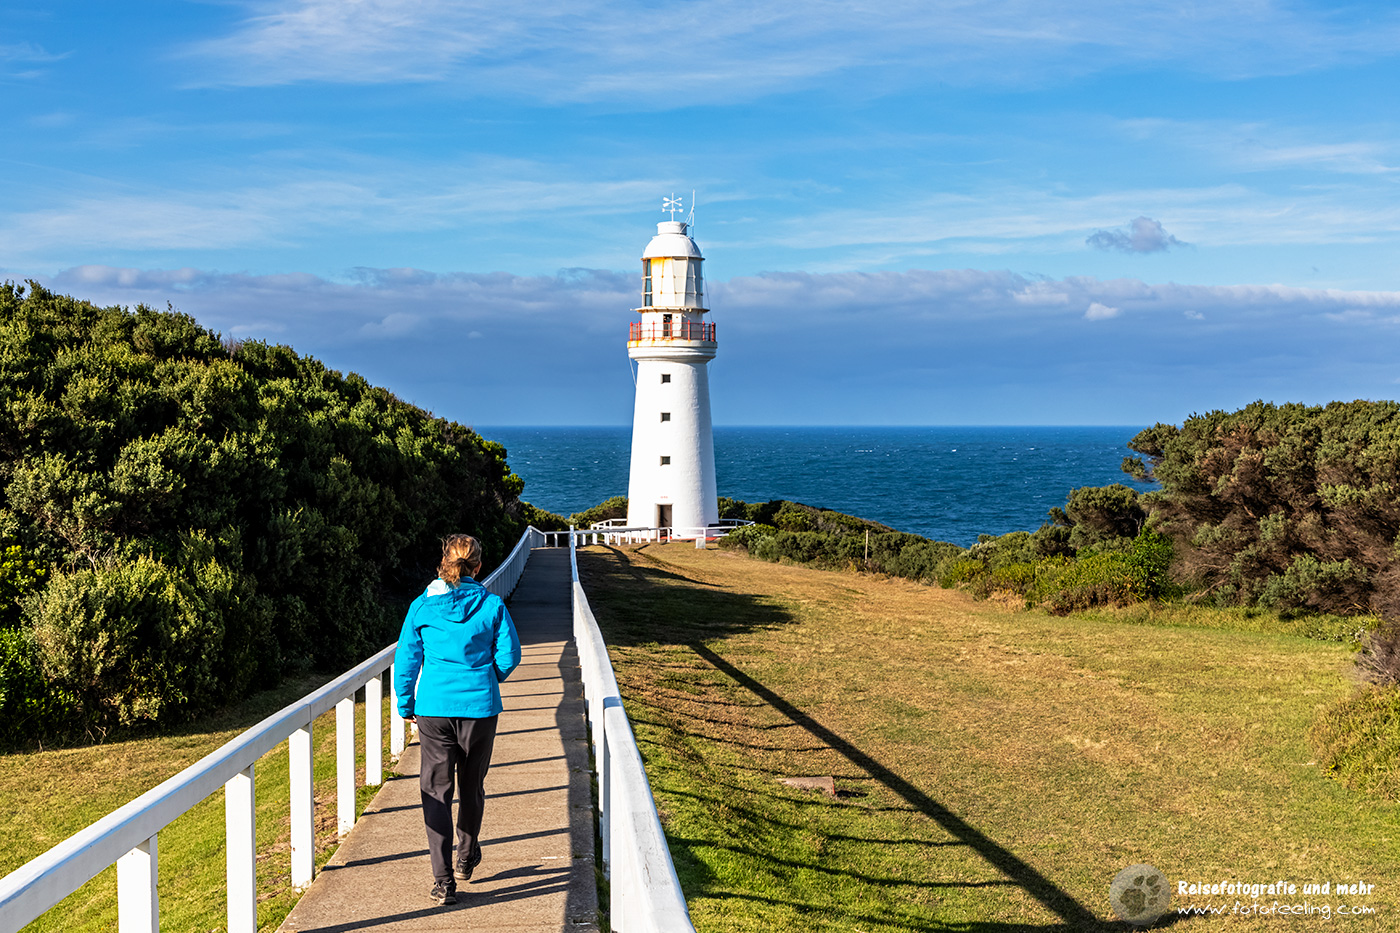 Cape Otway Lighthouse, Cape Otway, Victoria, Australien